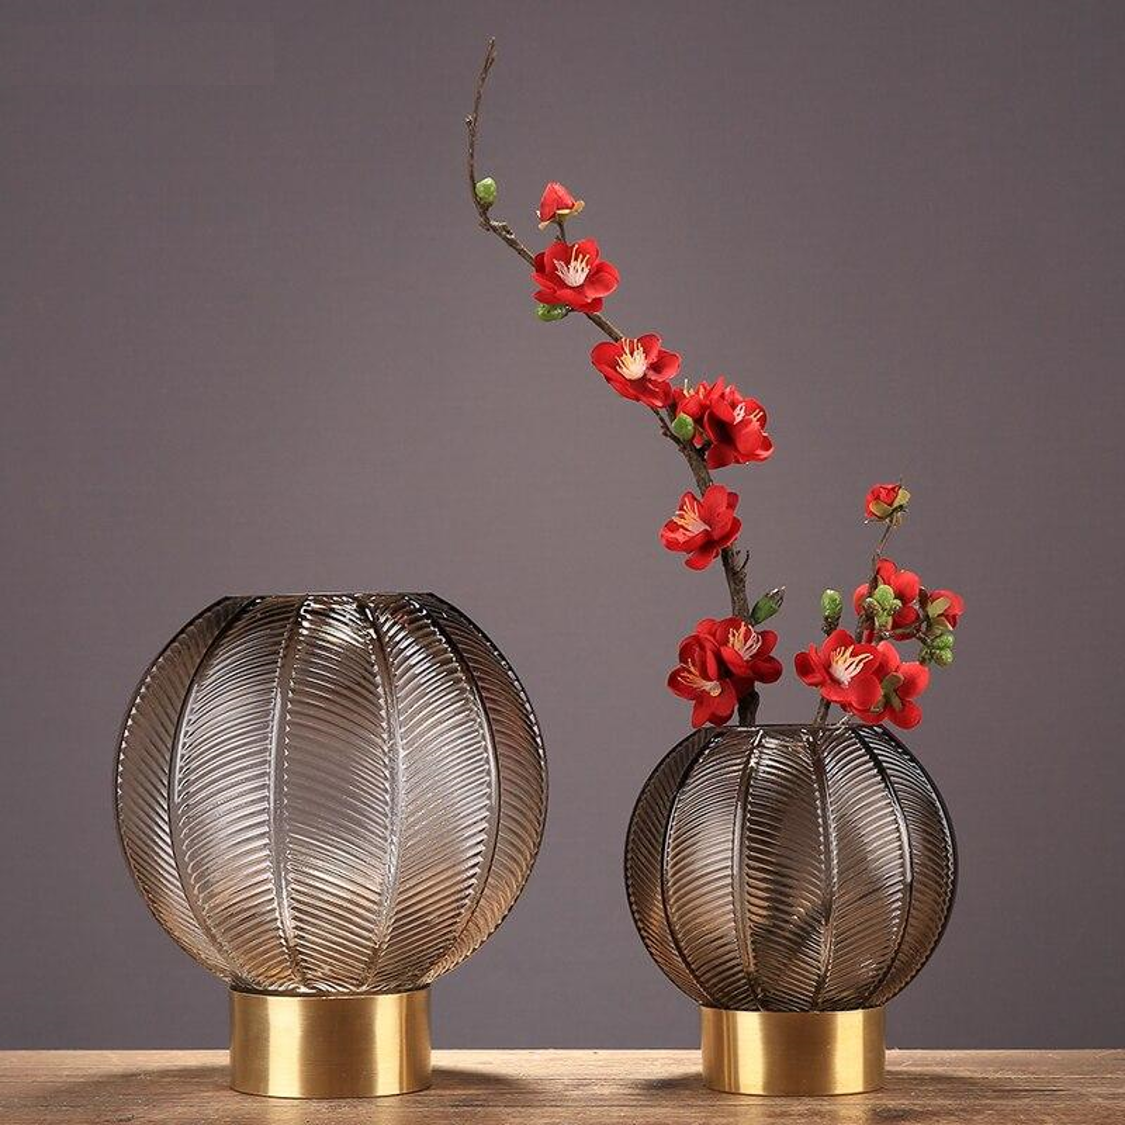 Edoardo Graceful Vase